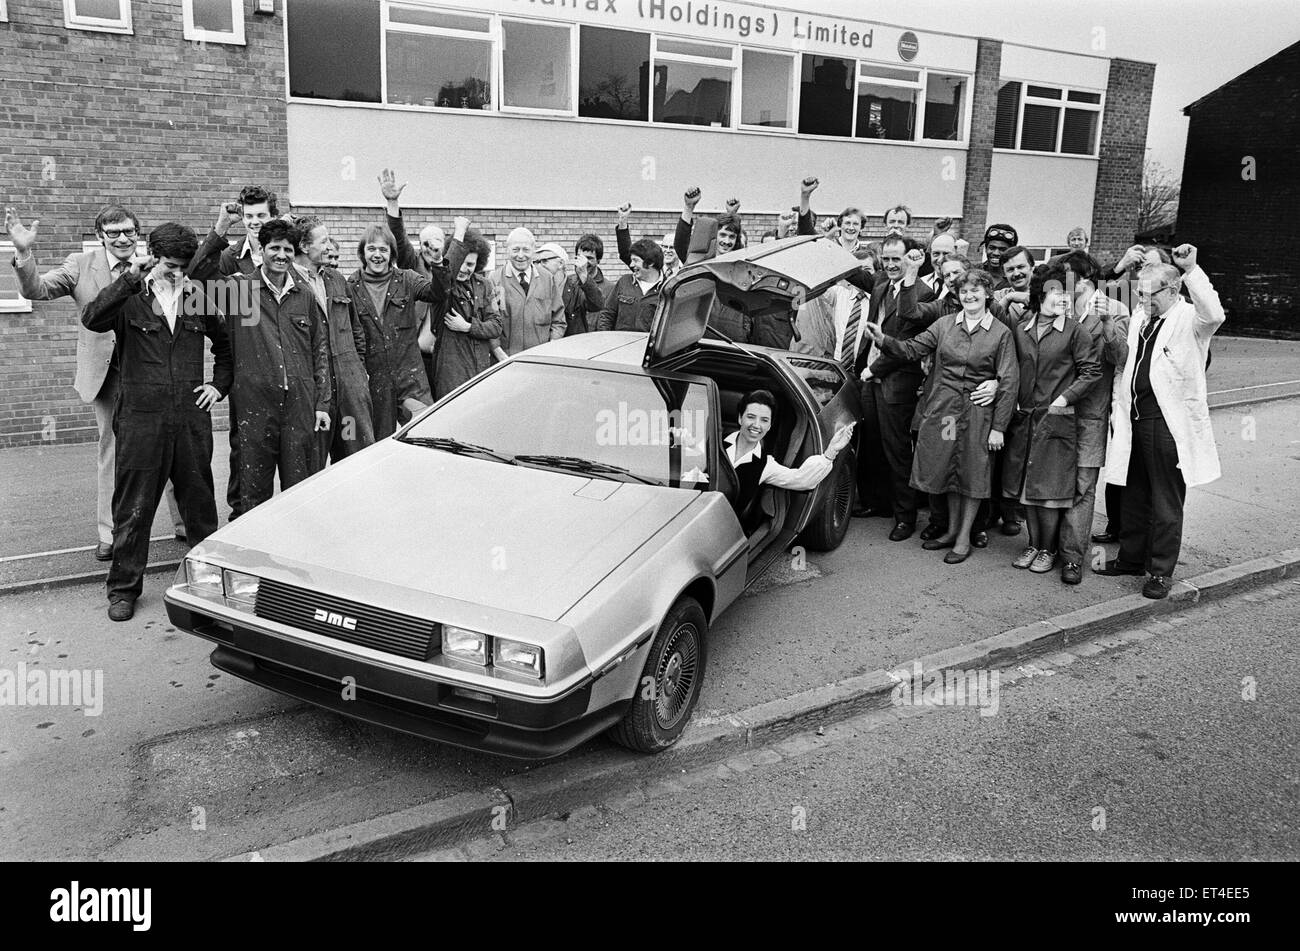 La DeLorean DMC-12 voiture de sport fabriqués par la DeLorean Motor Company. Photographié à la société bureaux d'Metalrax Holdings Limited, Birmingham, le 9 avril 1981. Banque D'Images